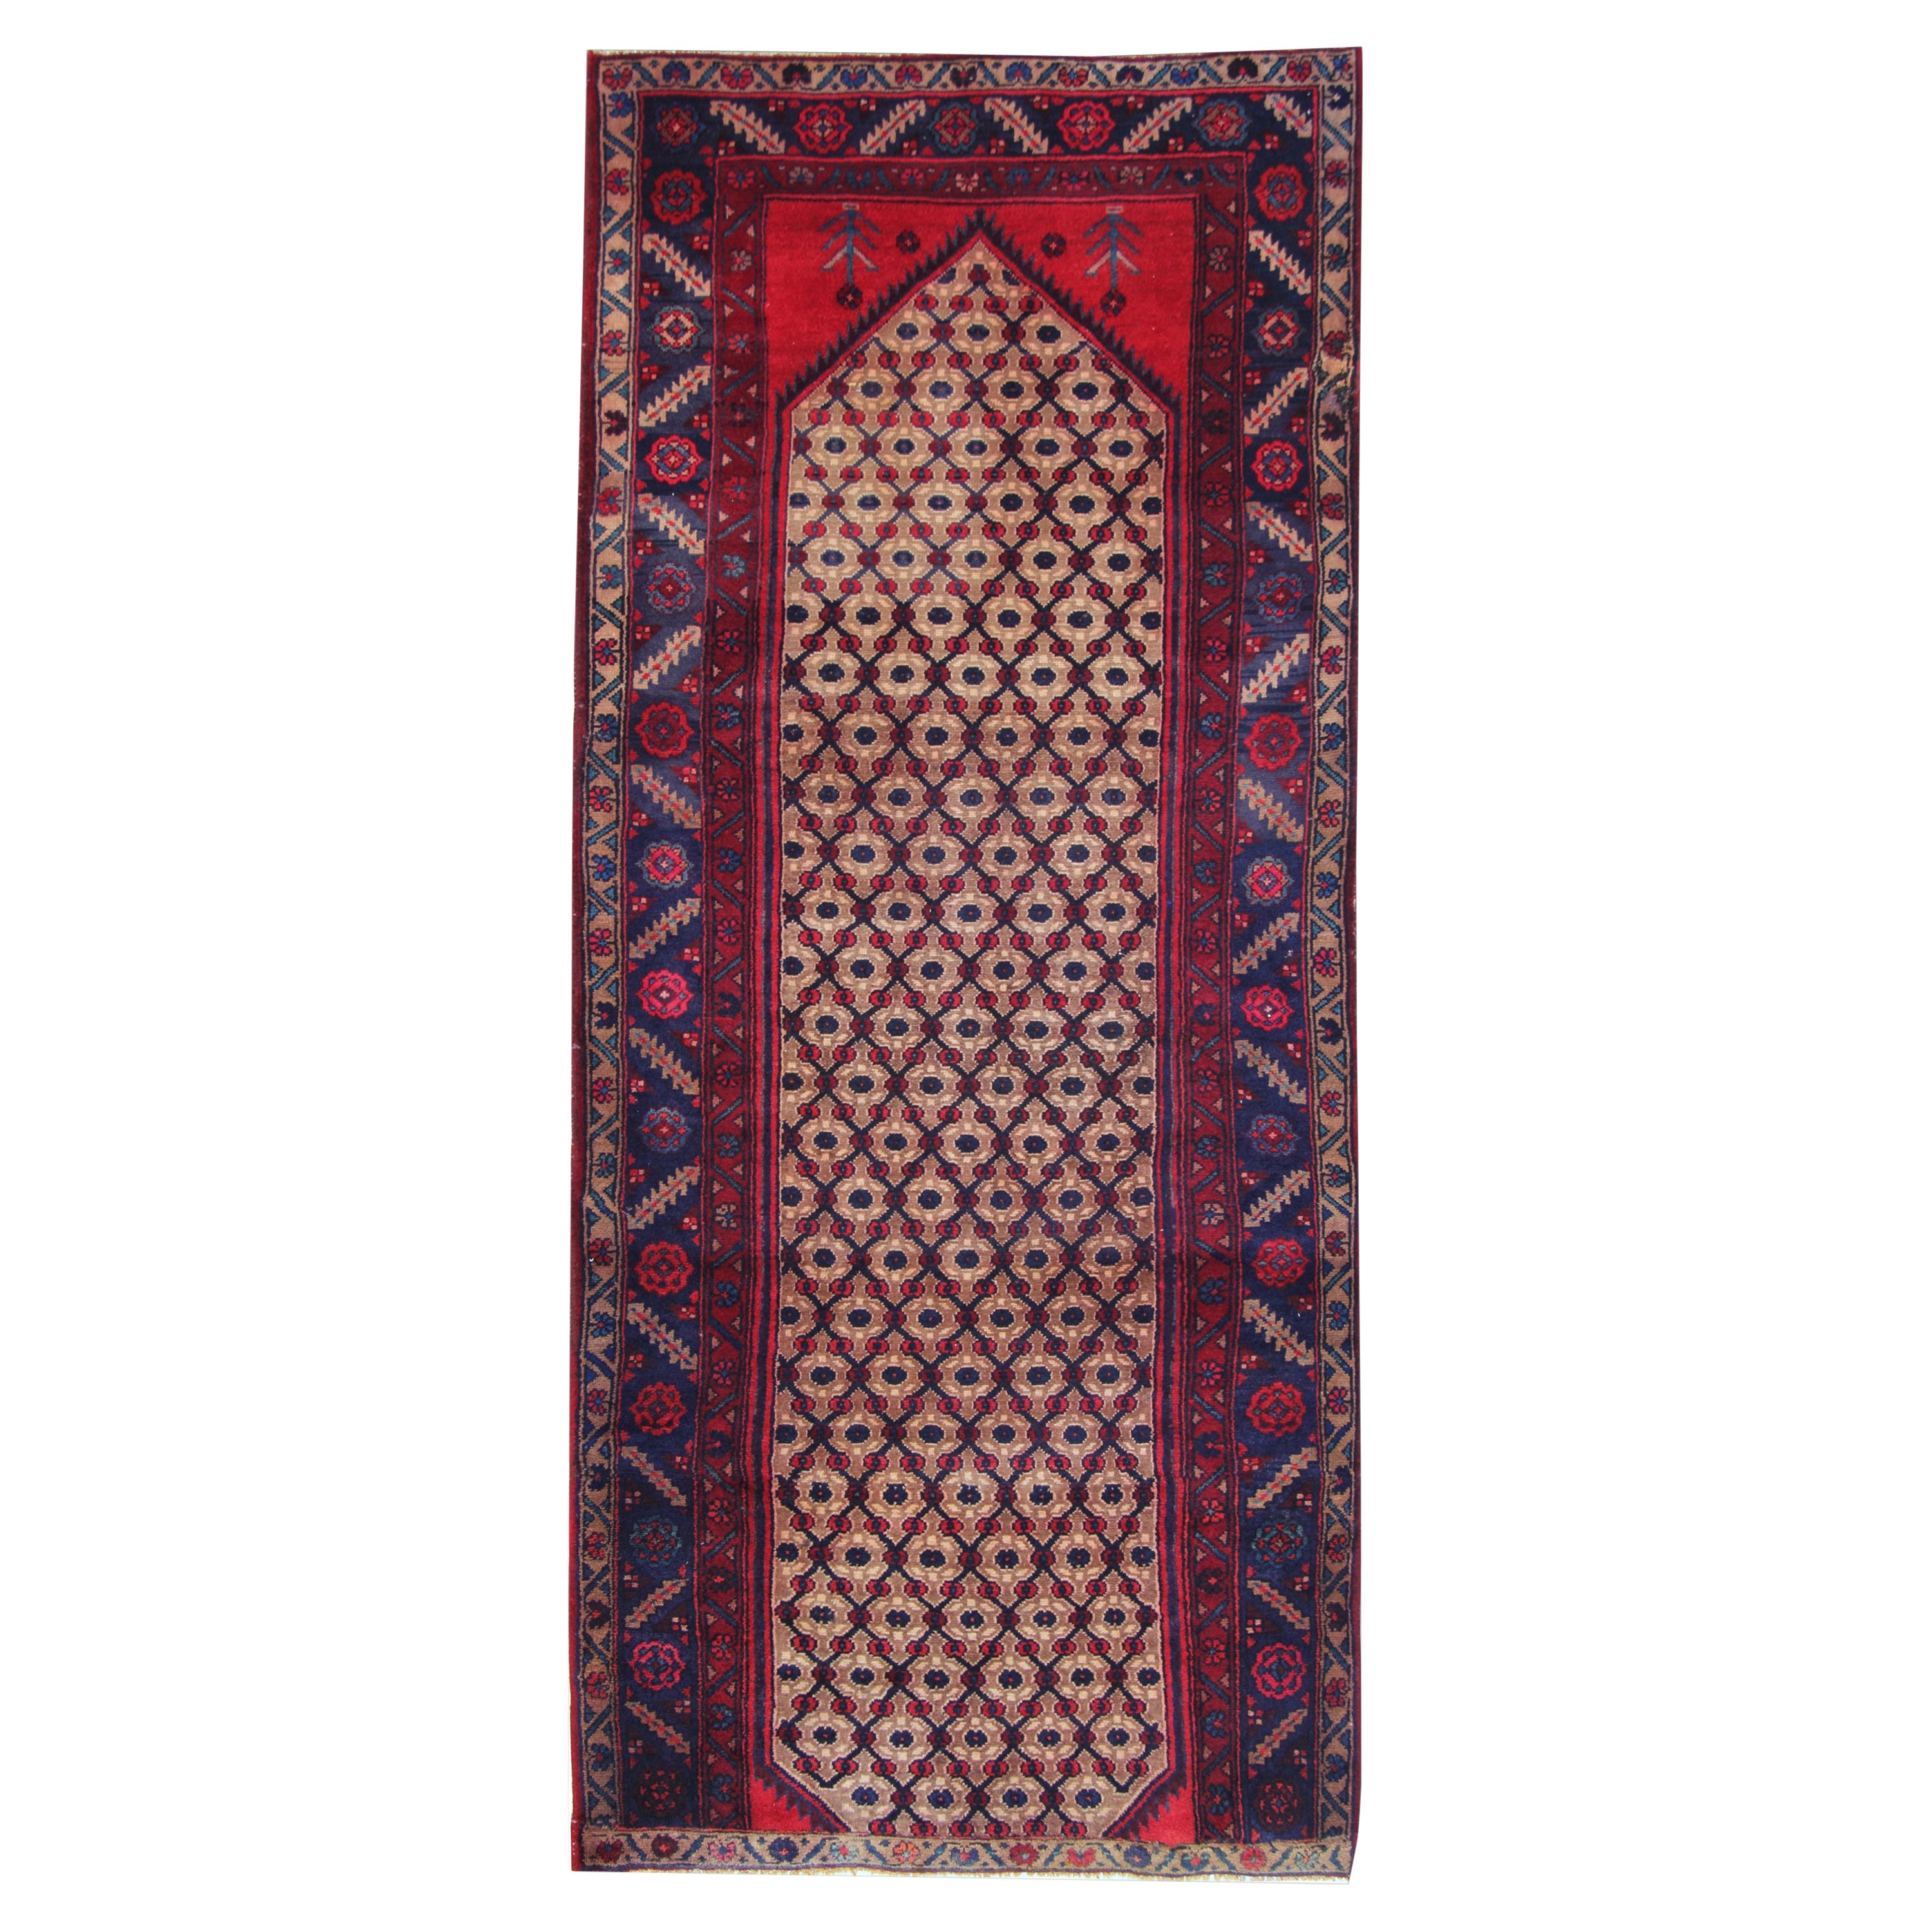 Handmade Runner Rug Traditional Oriental Wool Geometric Carpet Rug